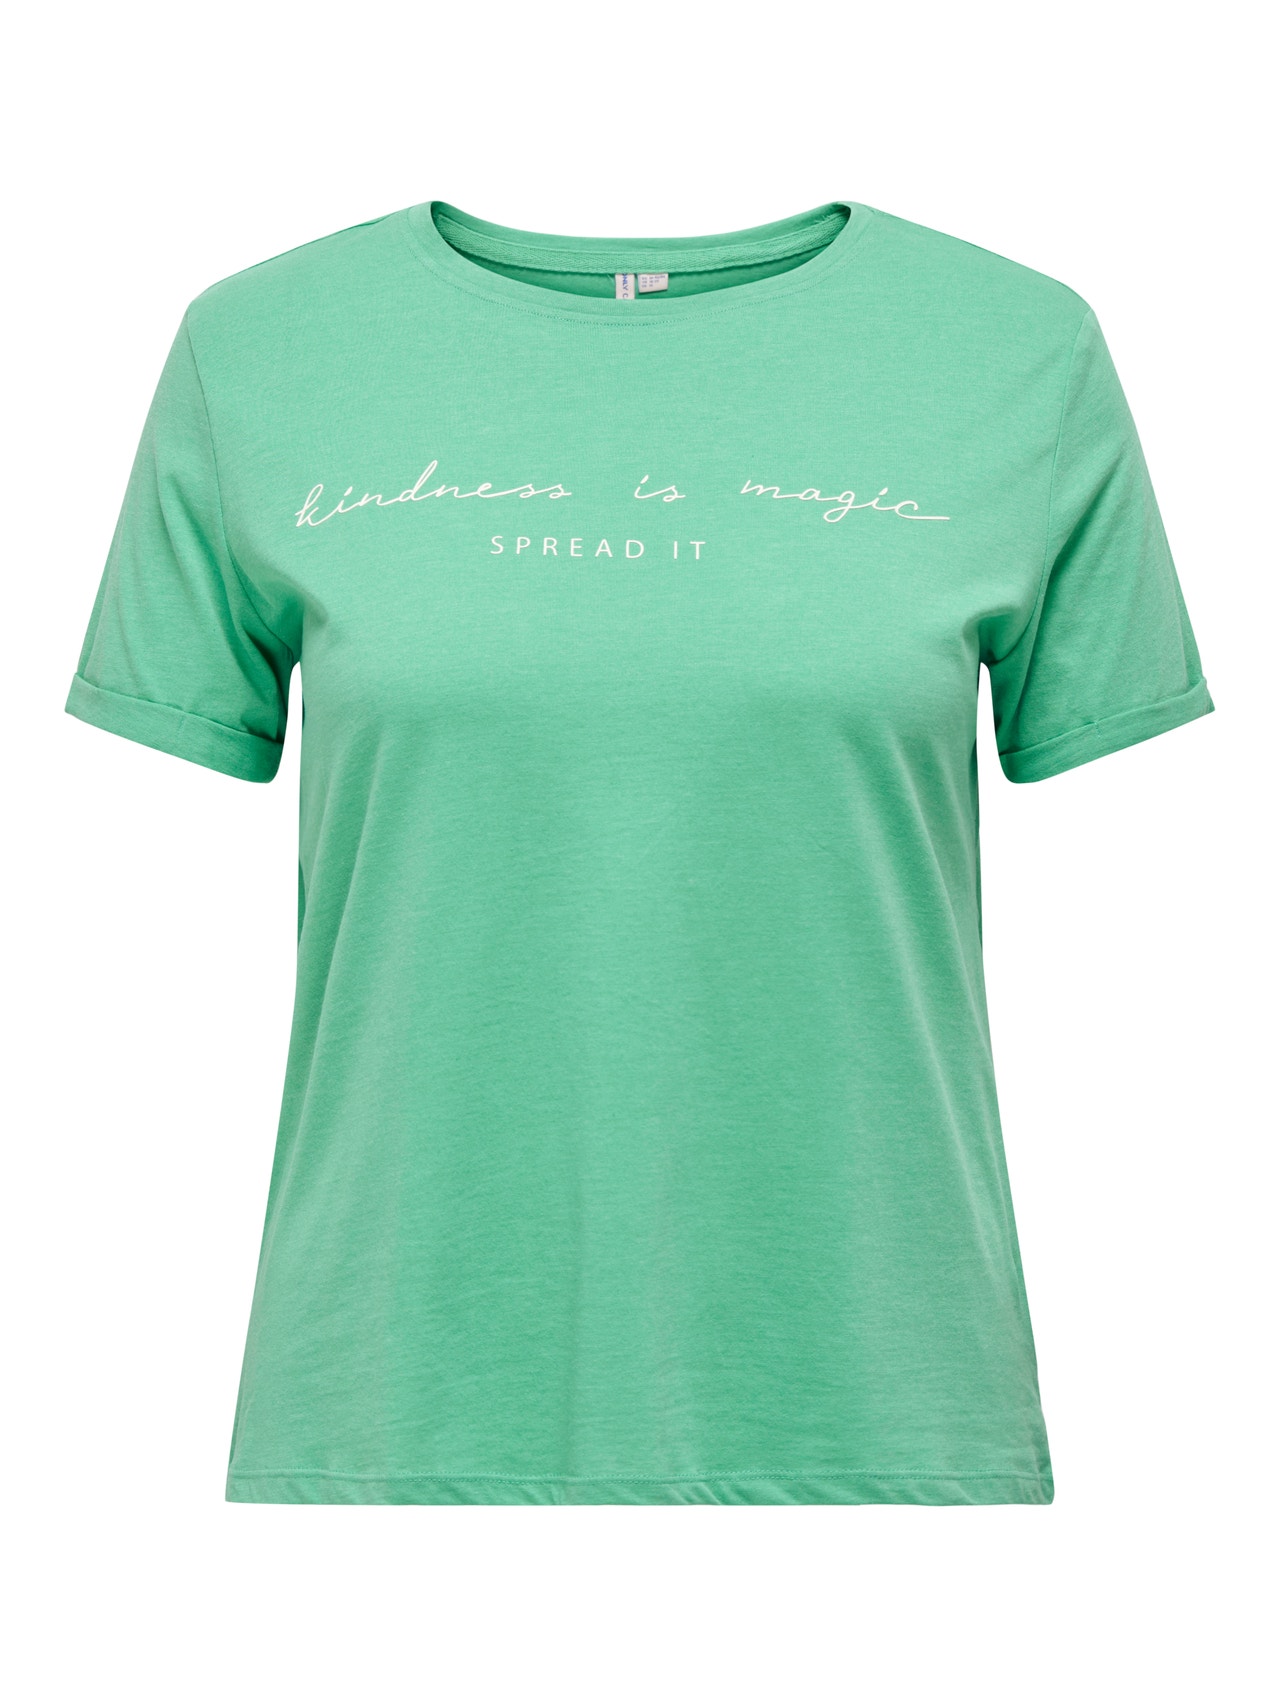 ONLY Curvy reg T-shirt -Winter Green - 15251650